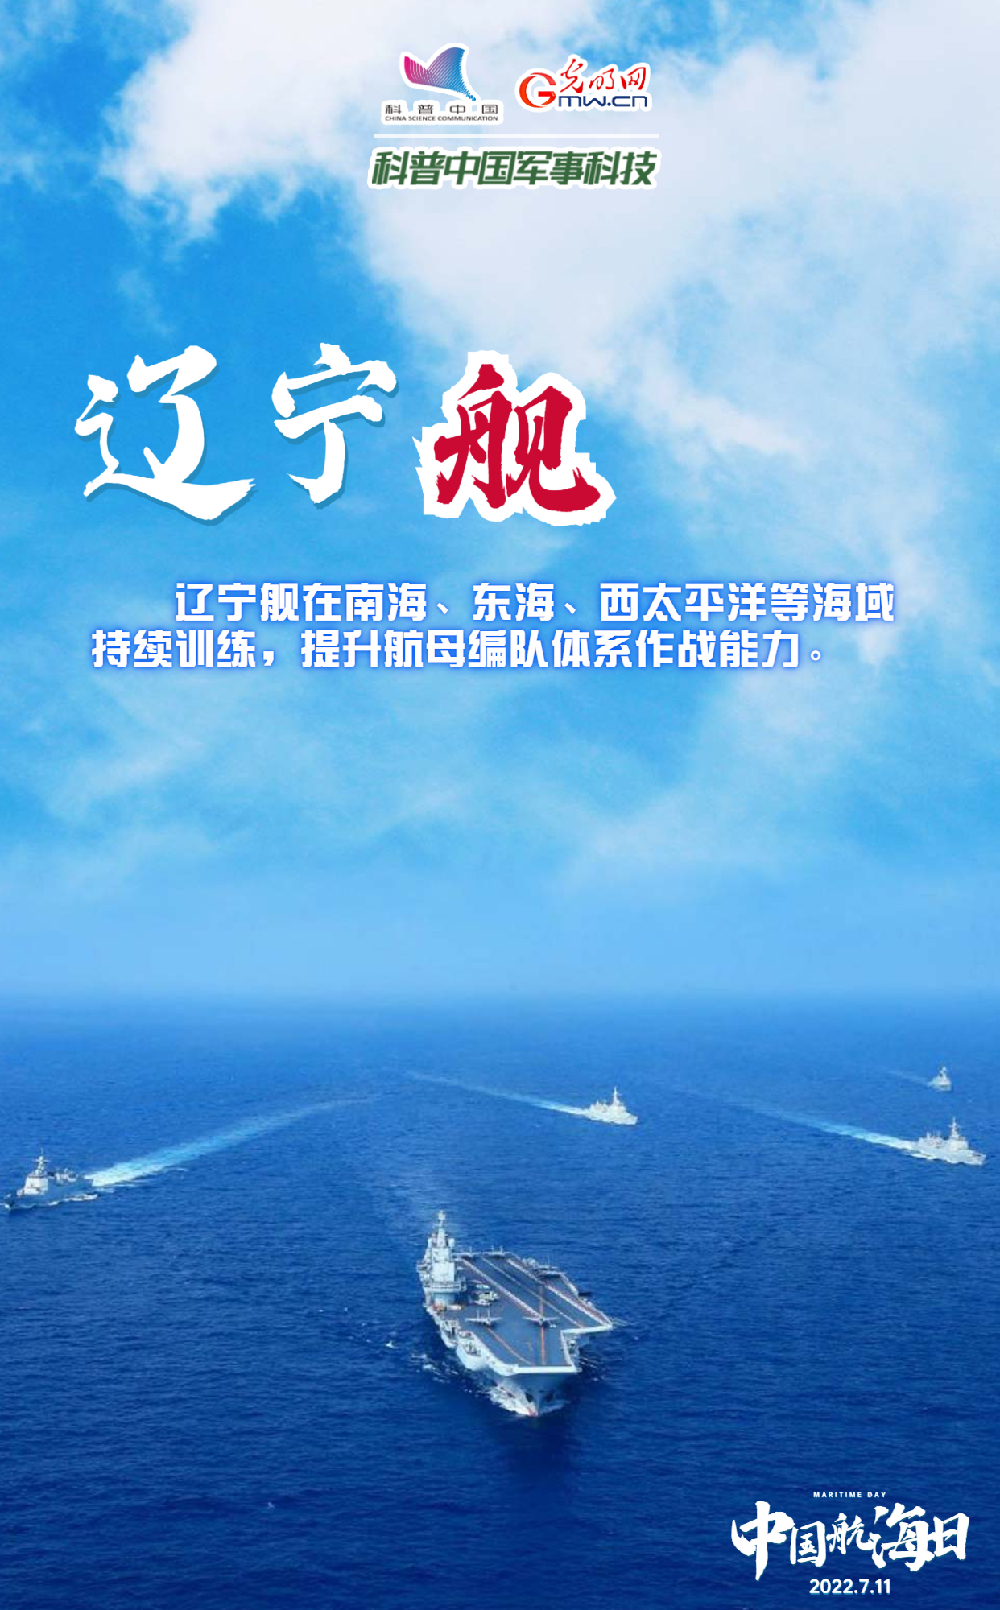 【中国航海日】悠悠华夏万里海江，人民海军向海图强！